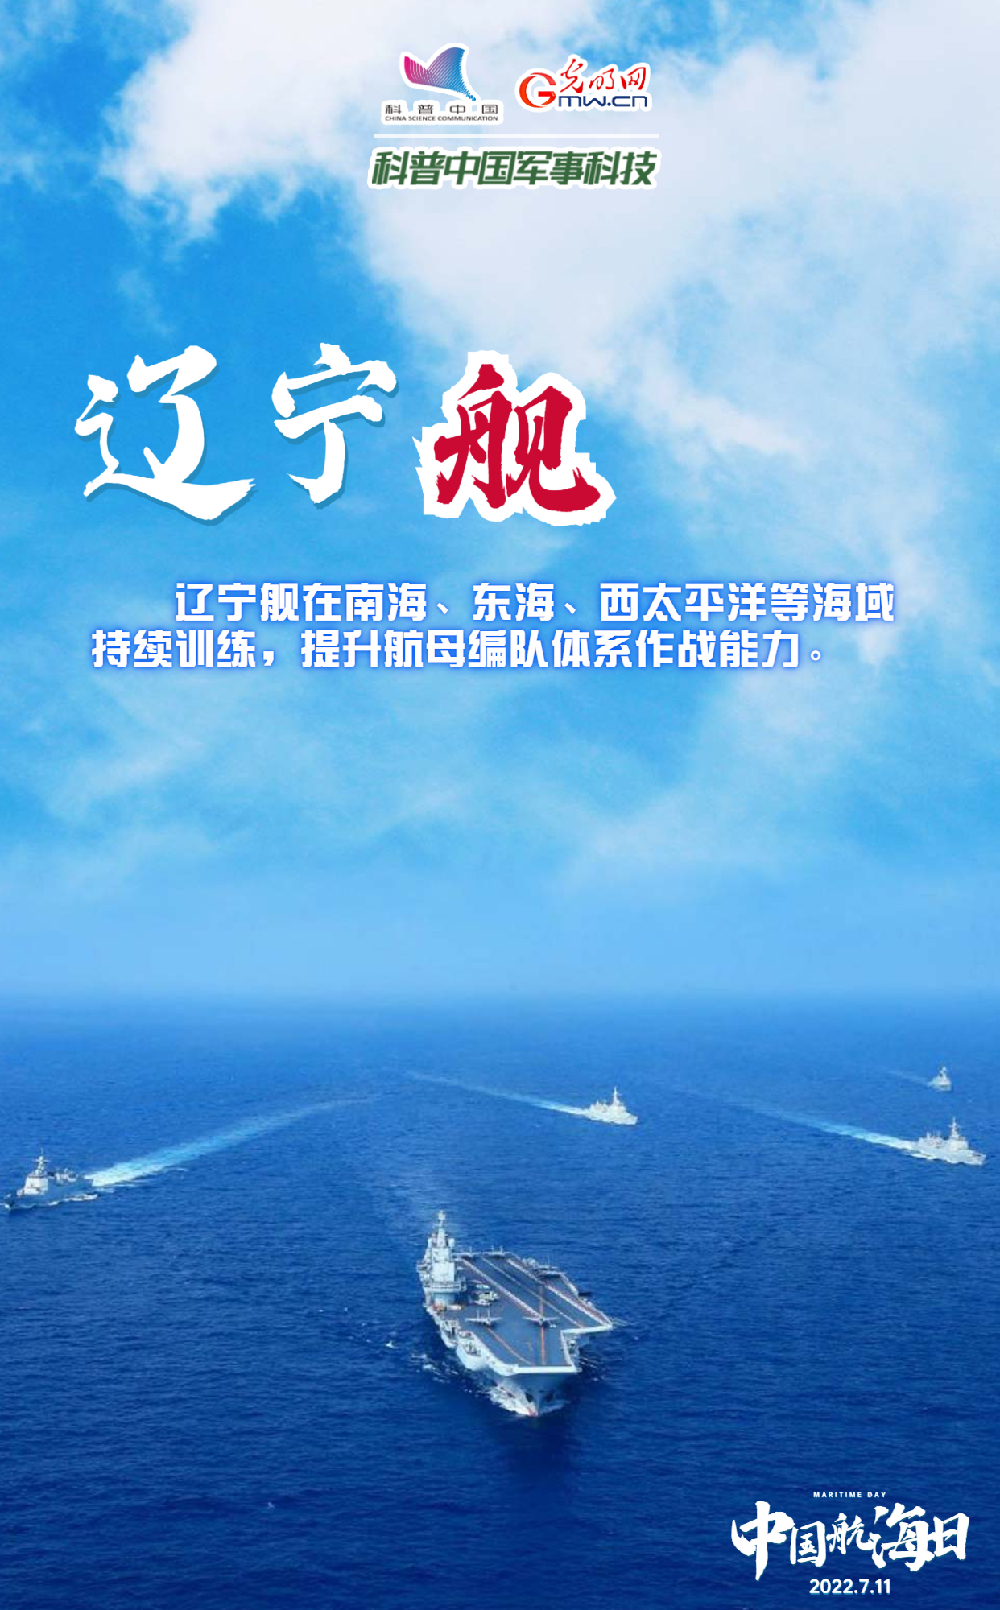 【中国航海日】悠悠华夏万里海江，人民海军向海图强！